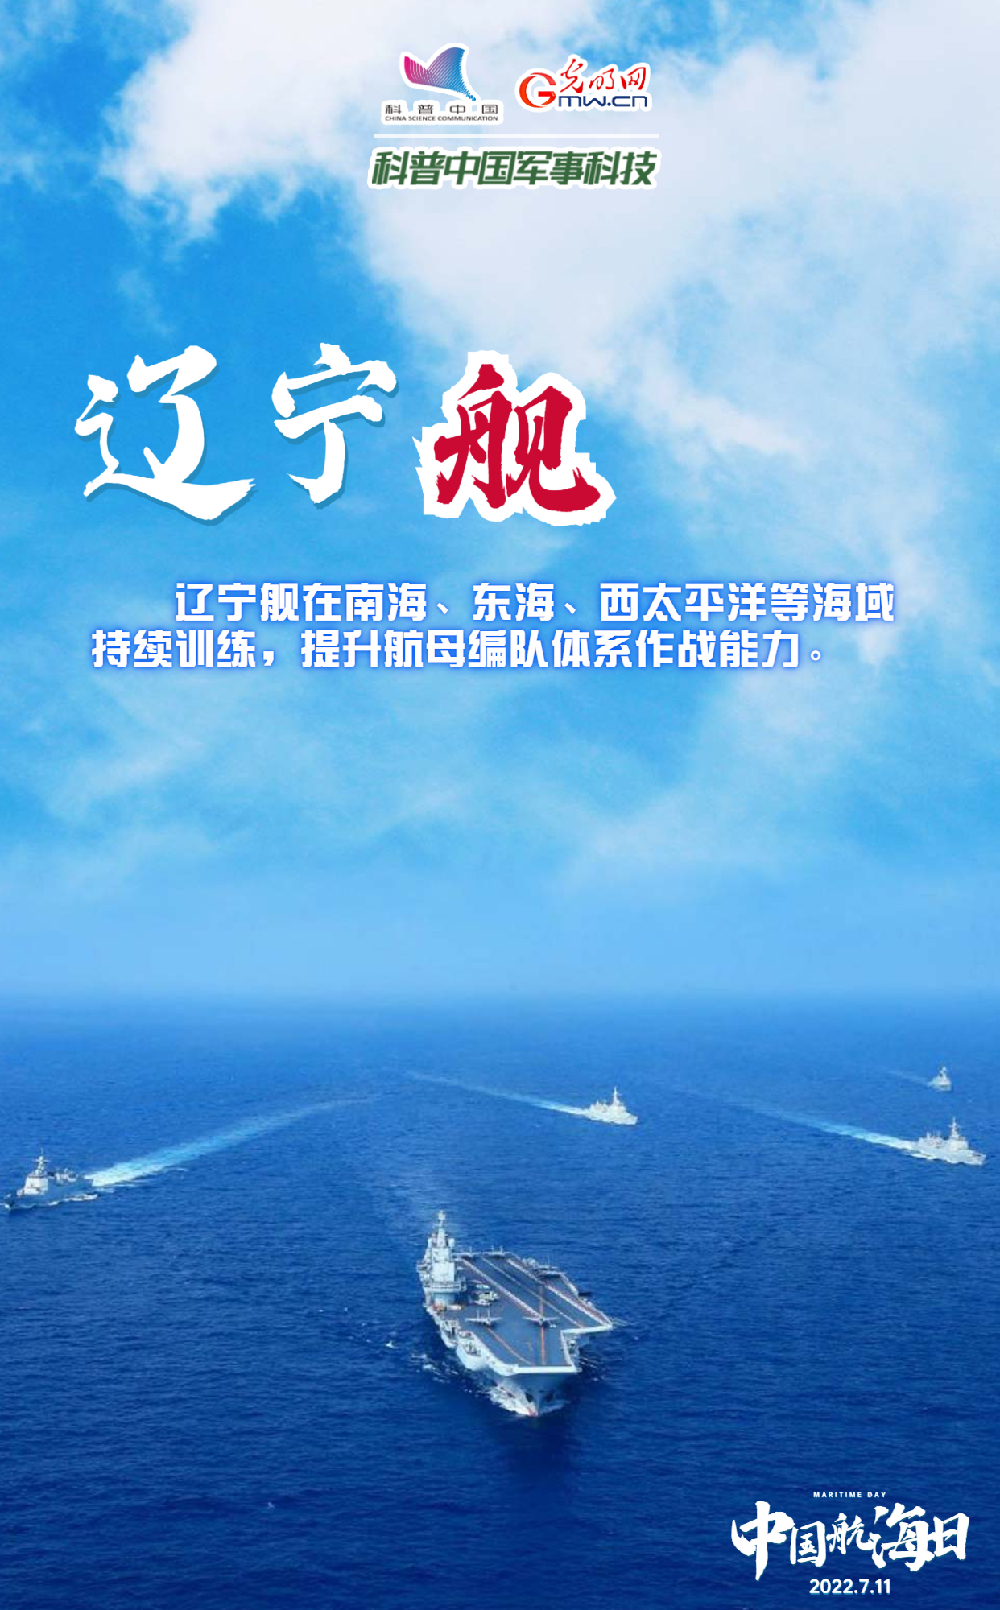 【中国航海日】悠悠华夏万里海江，人民海军向海图强！